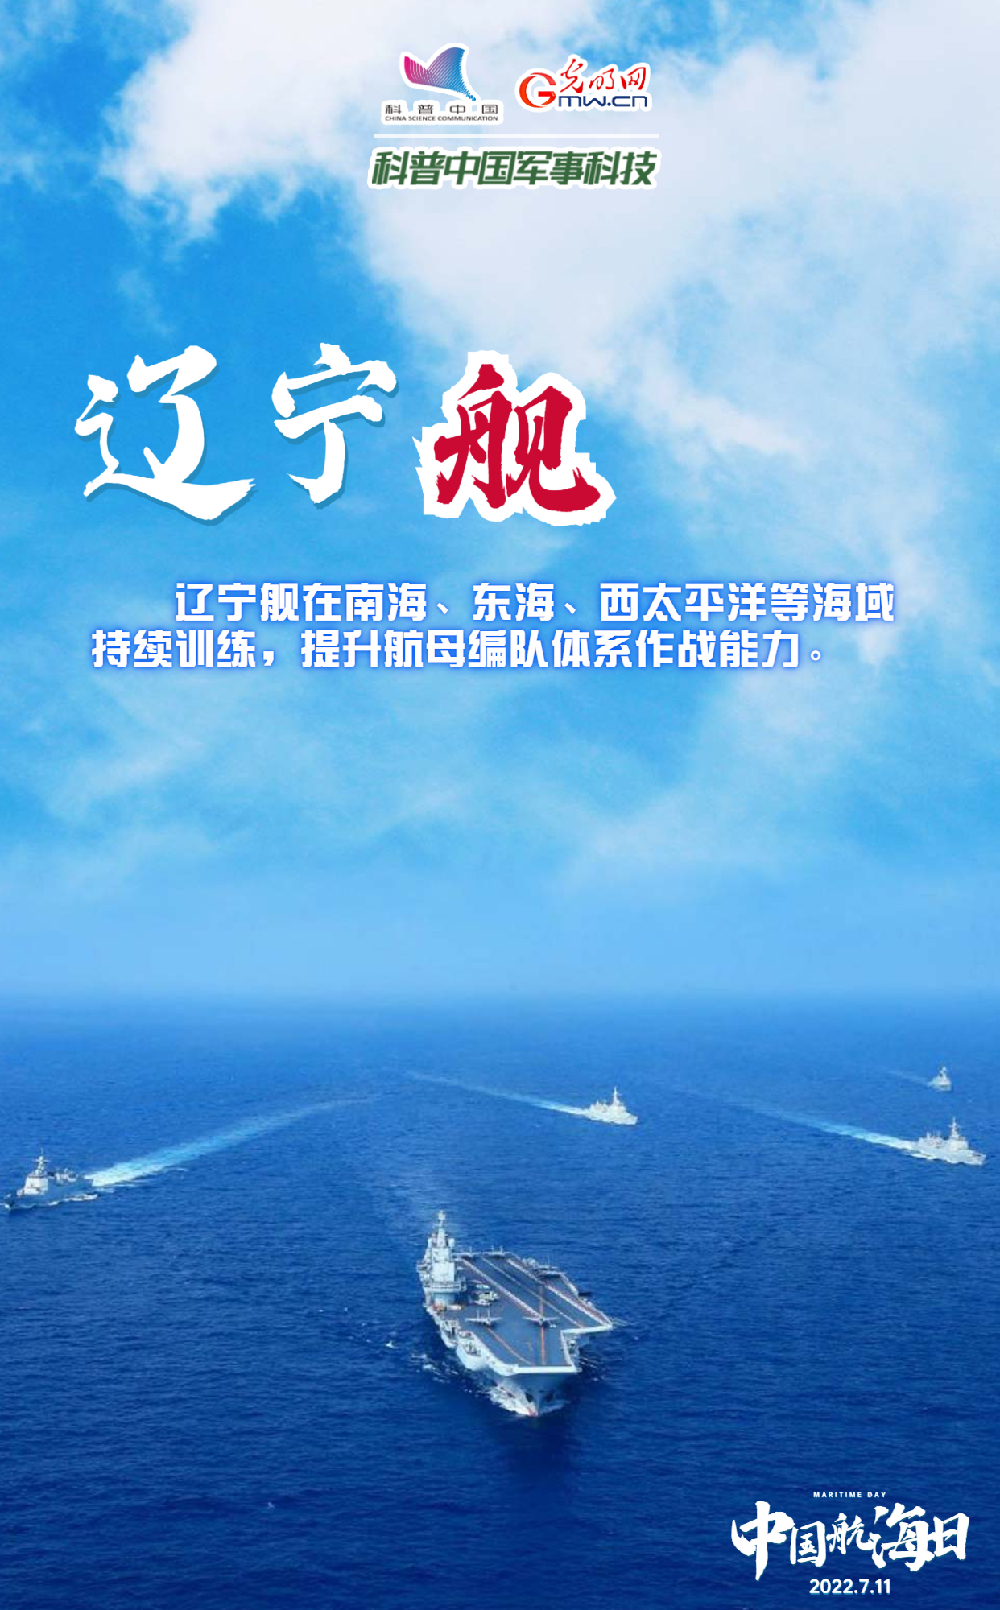 【中国航海日】悠悠华夏万里海江，人民海军向海图强！